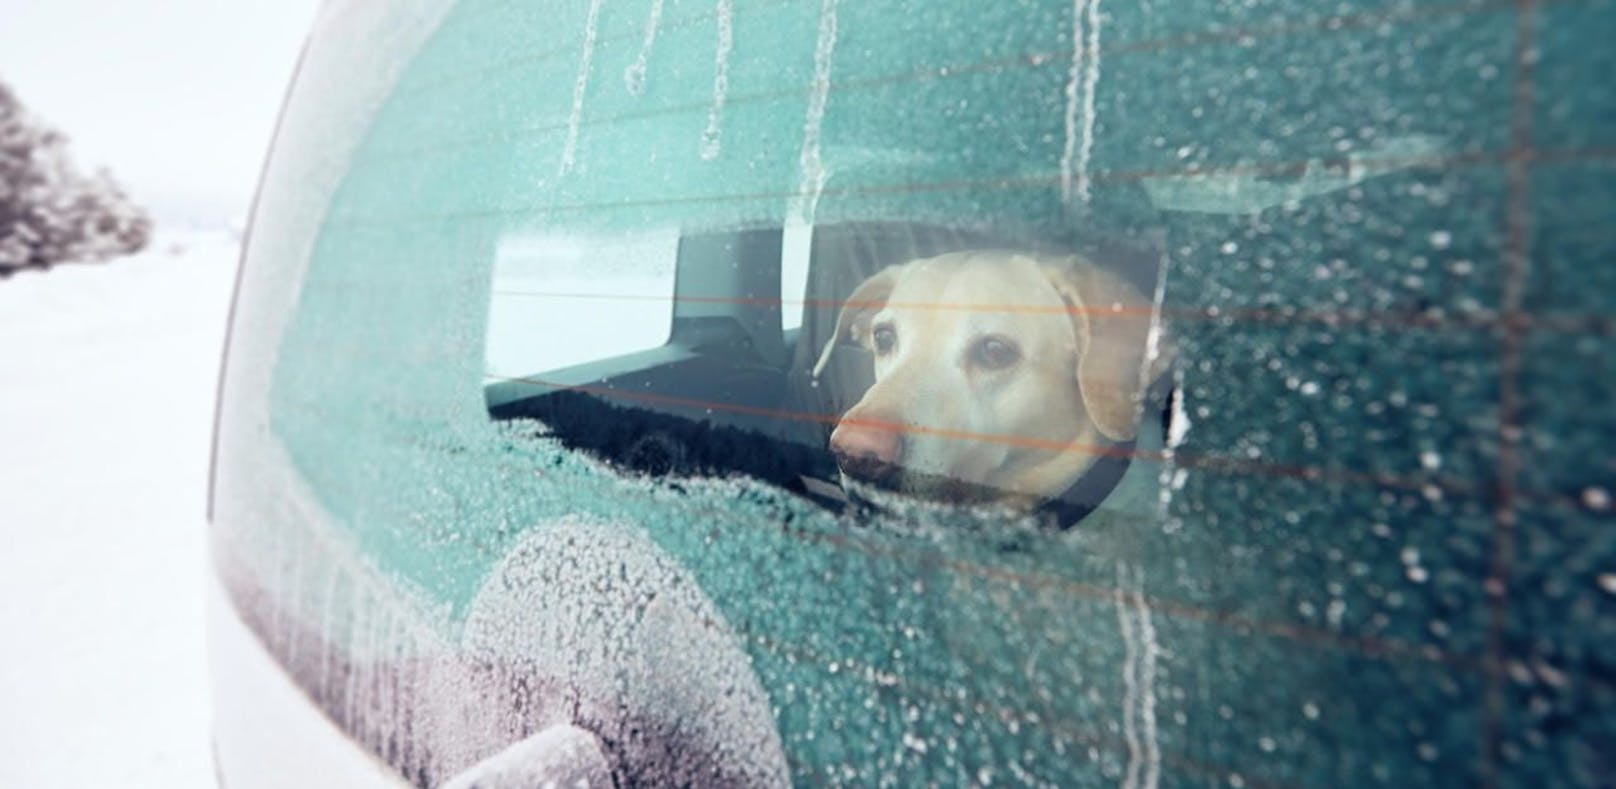 Der Mann hatte seinen Hund bei der eisigen Kälte im Auto zurückgelassen